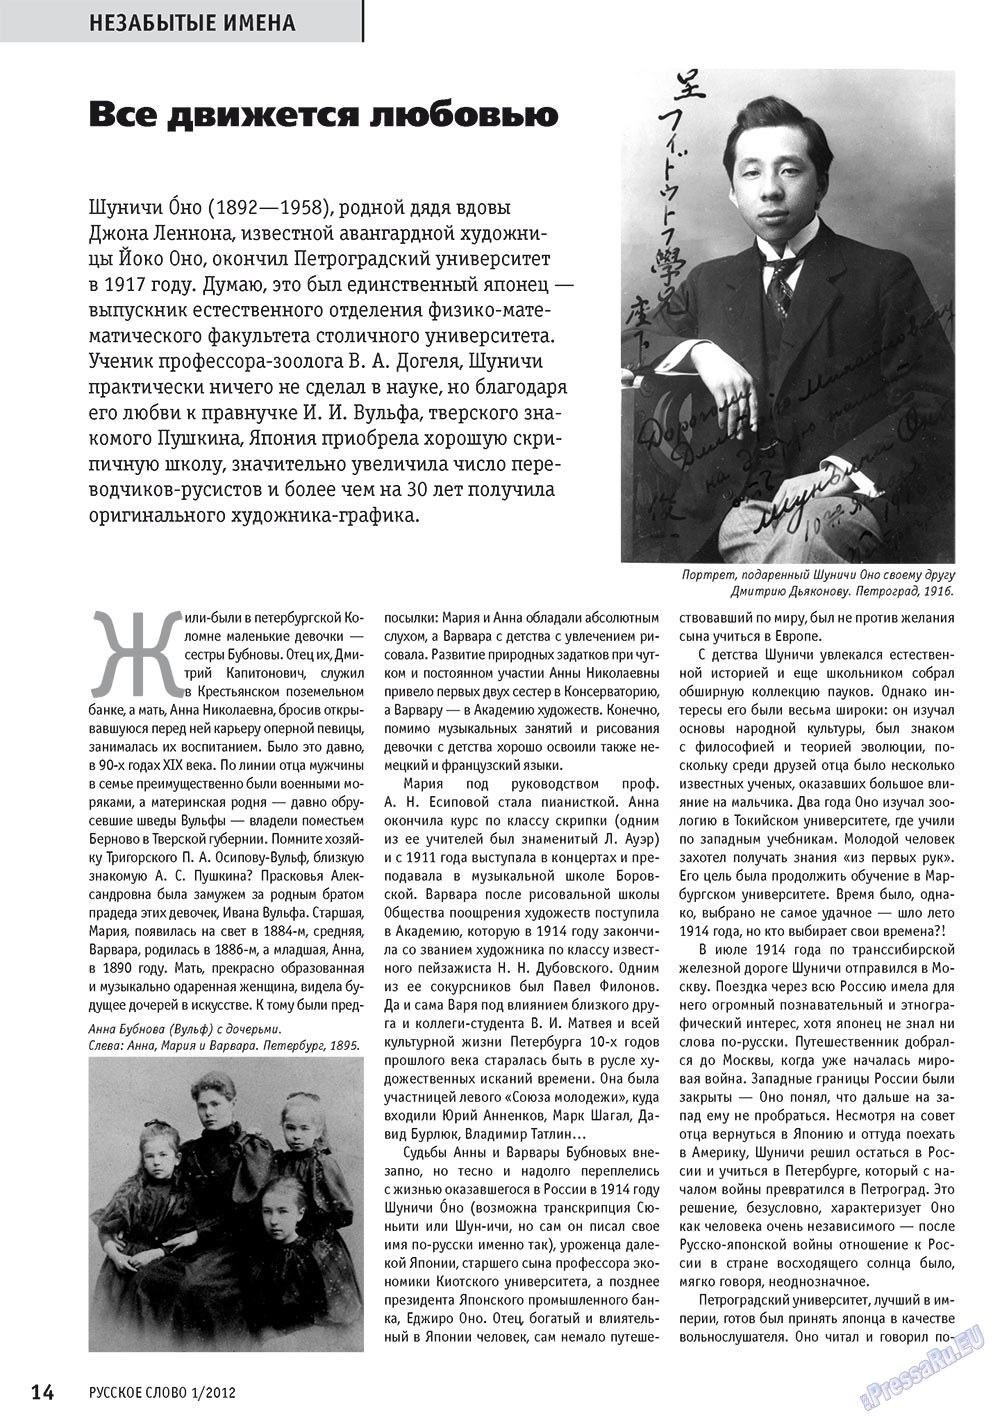 Русское слово, журнал. 2012 №1 стр.16